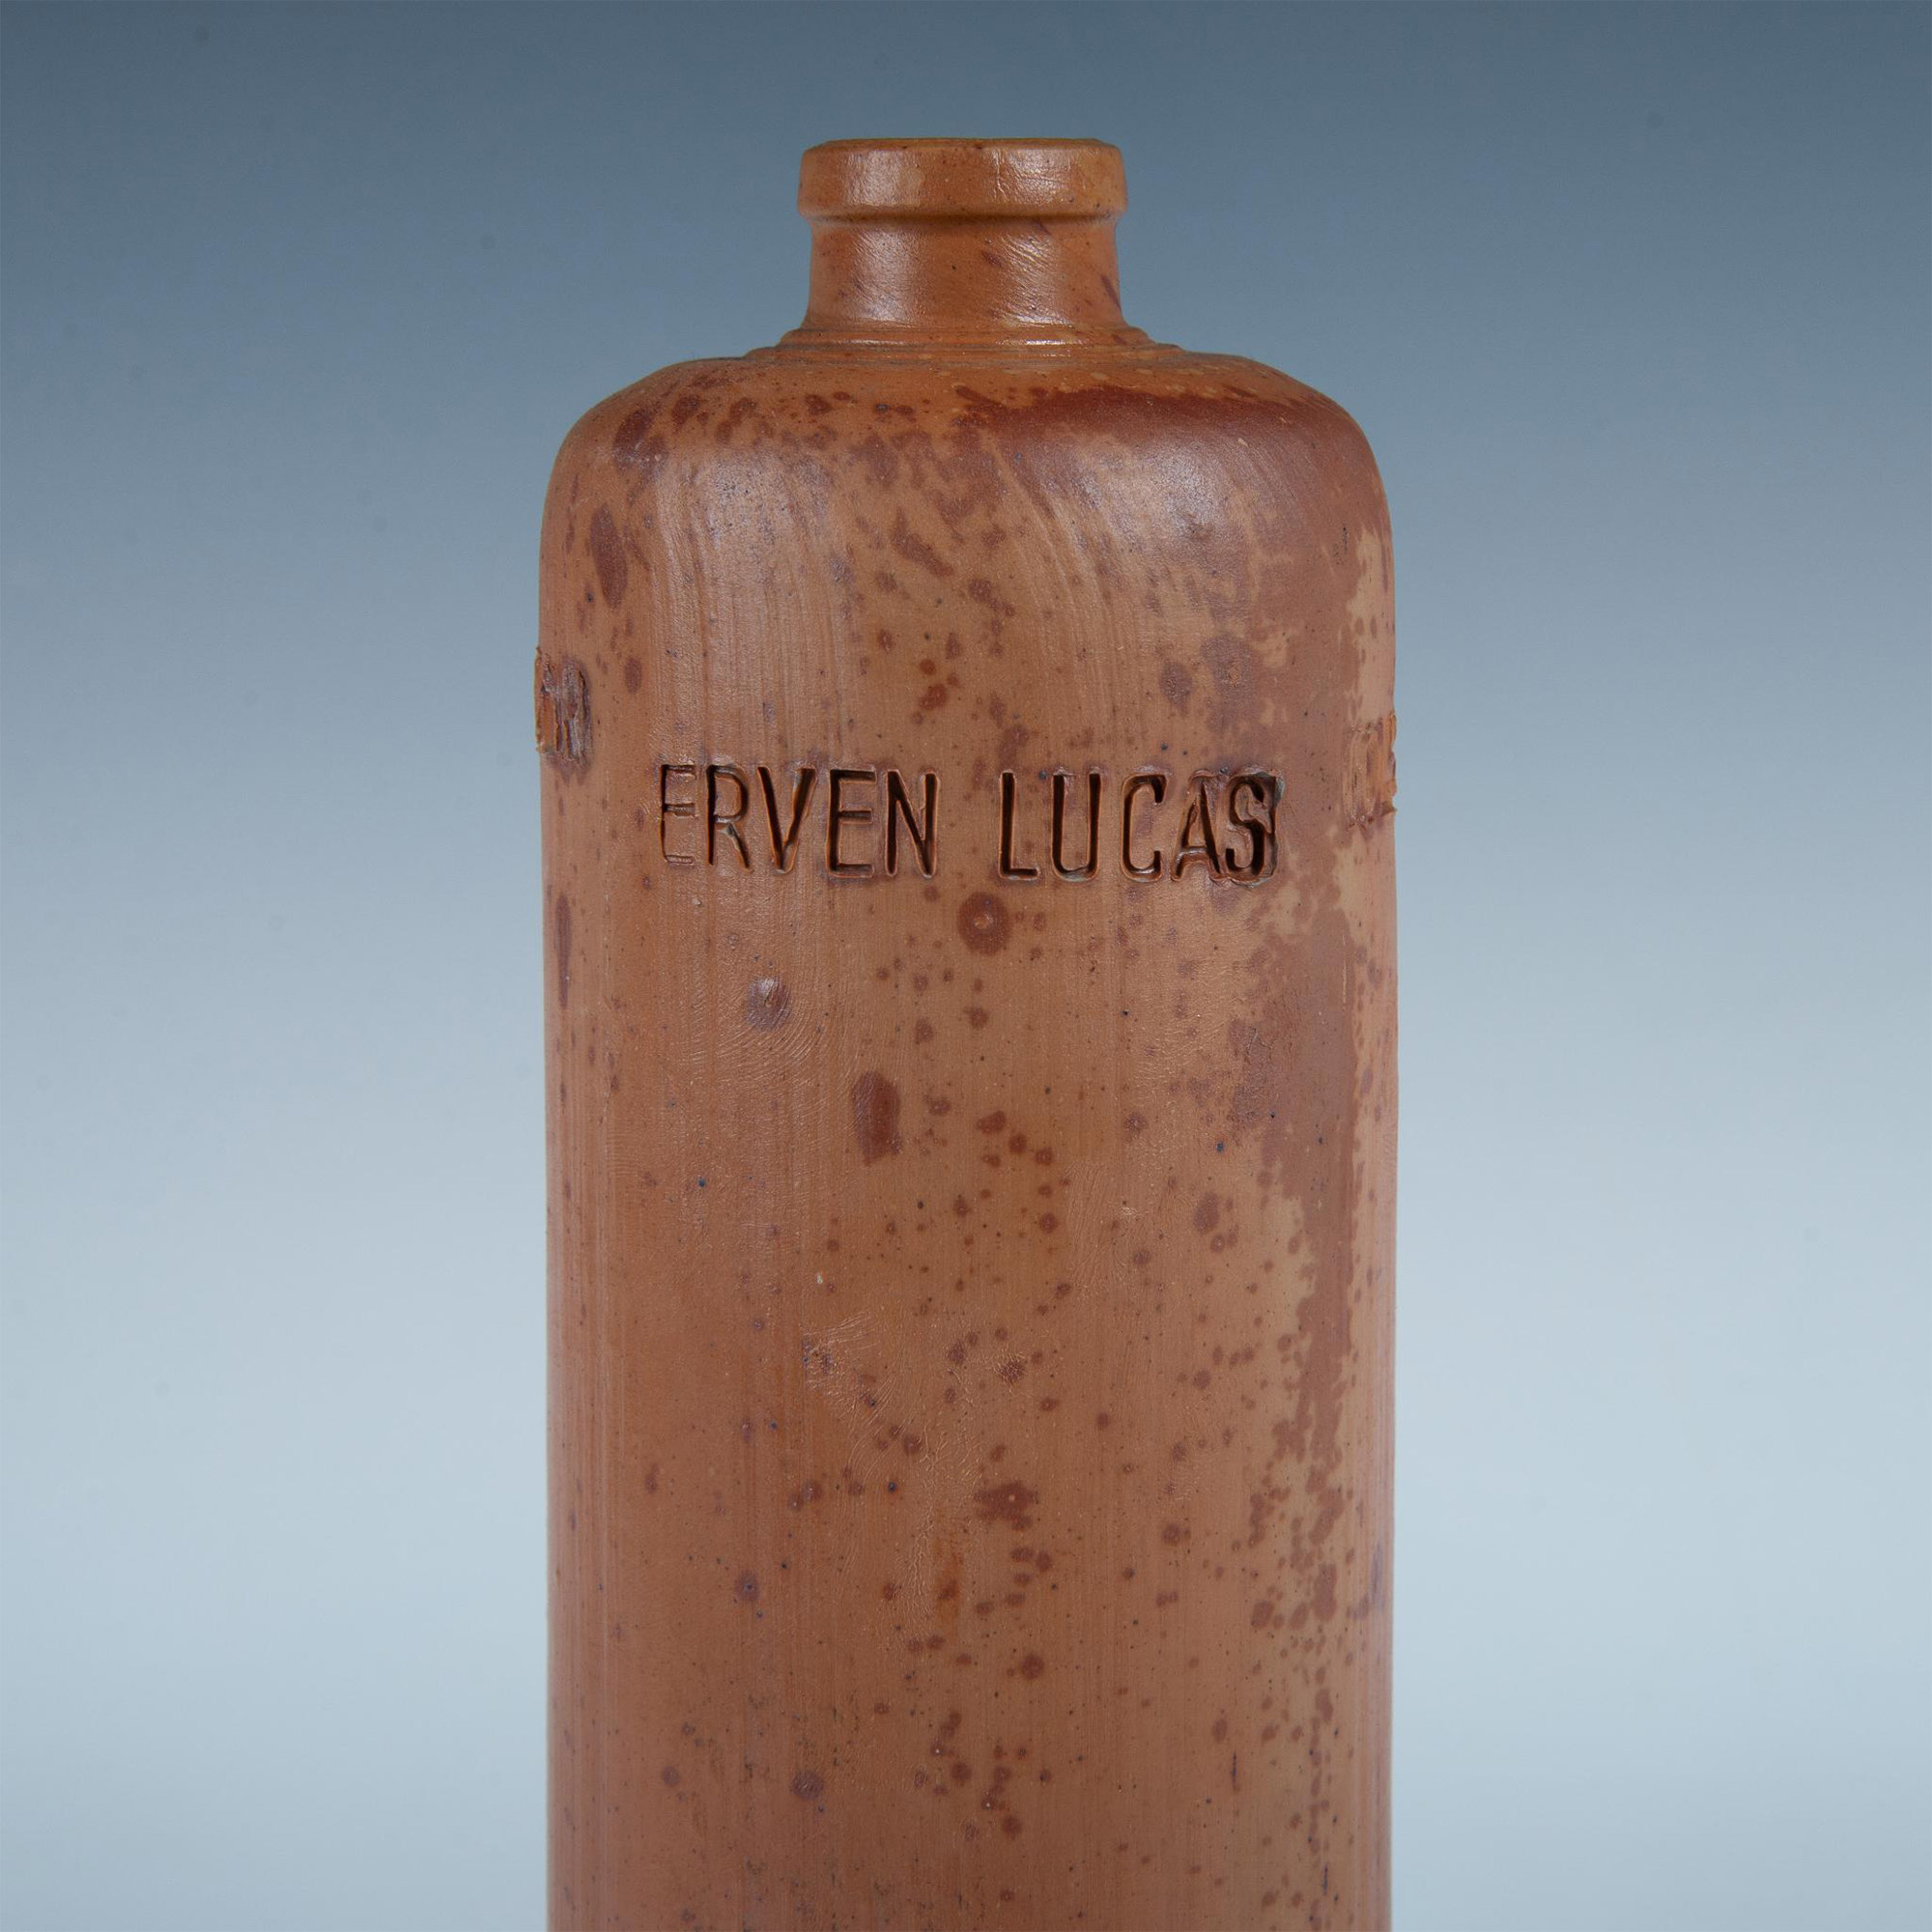 Antique Stoneware Liquor Bottle, Erven Lucas - Image 4 of 6